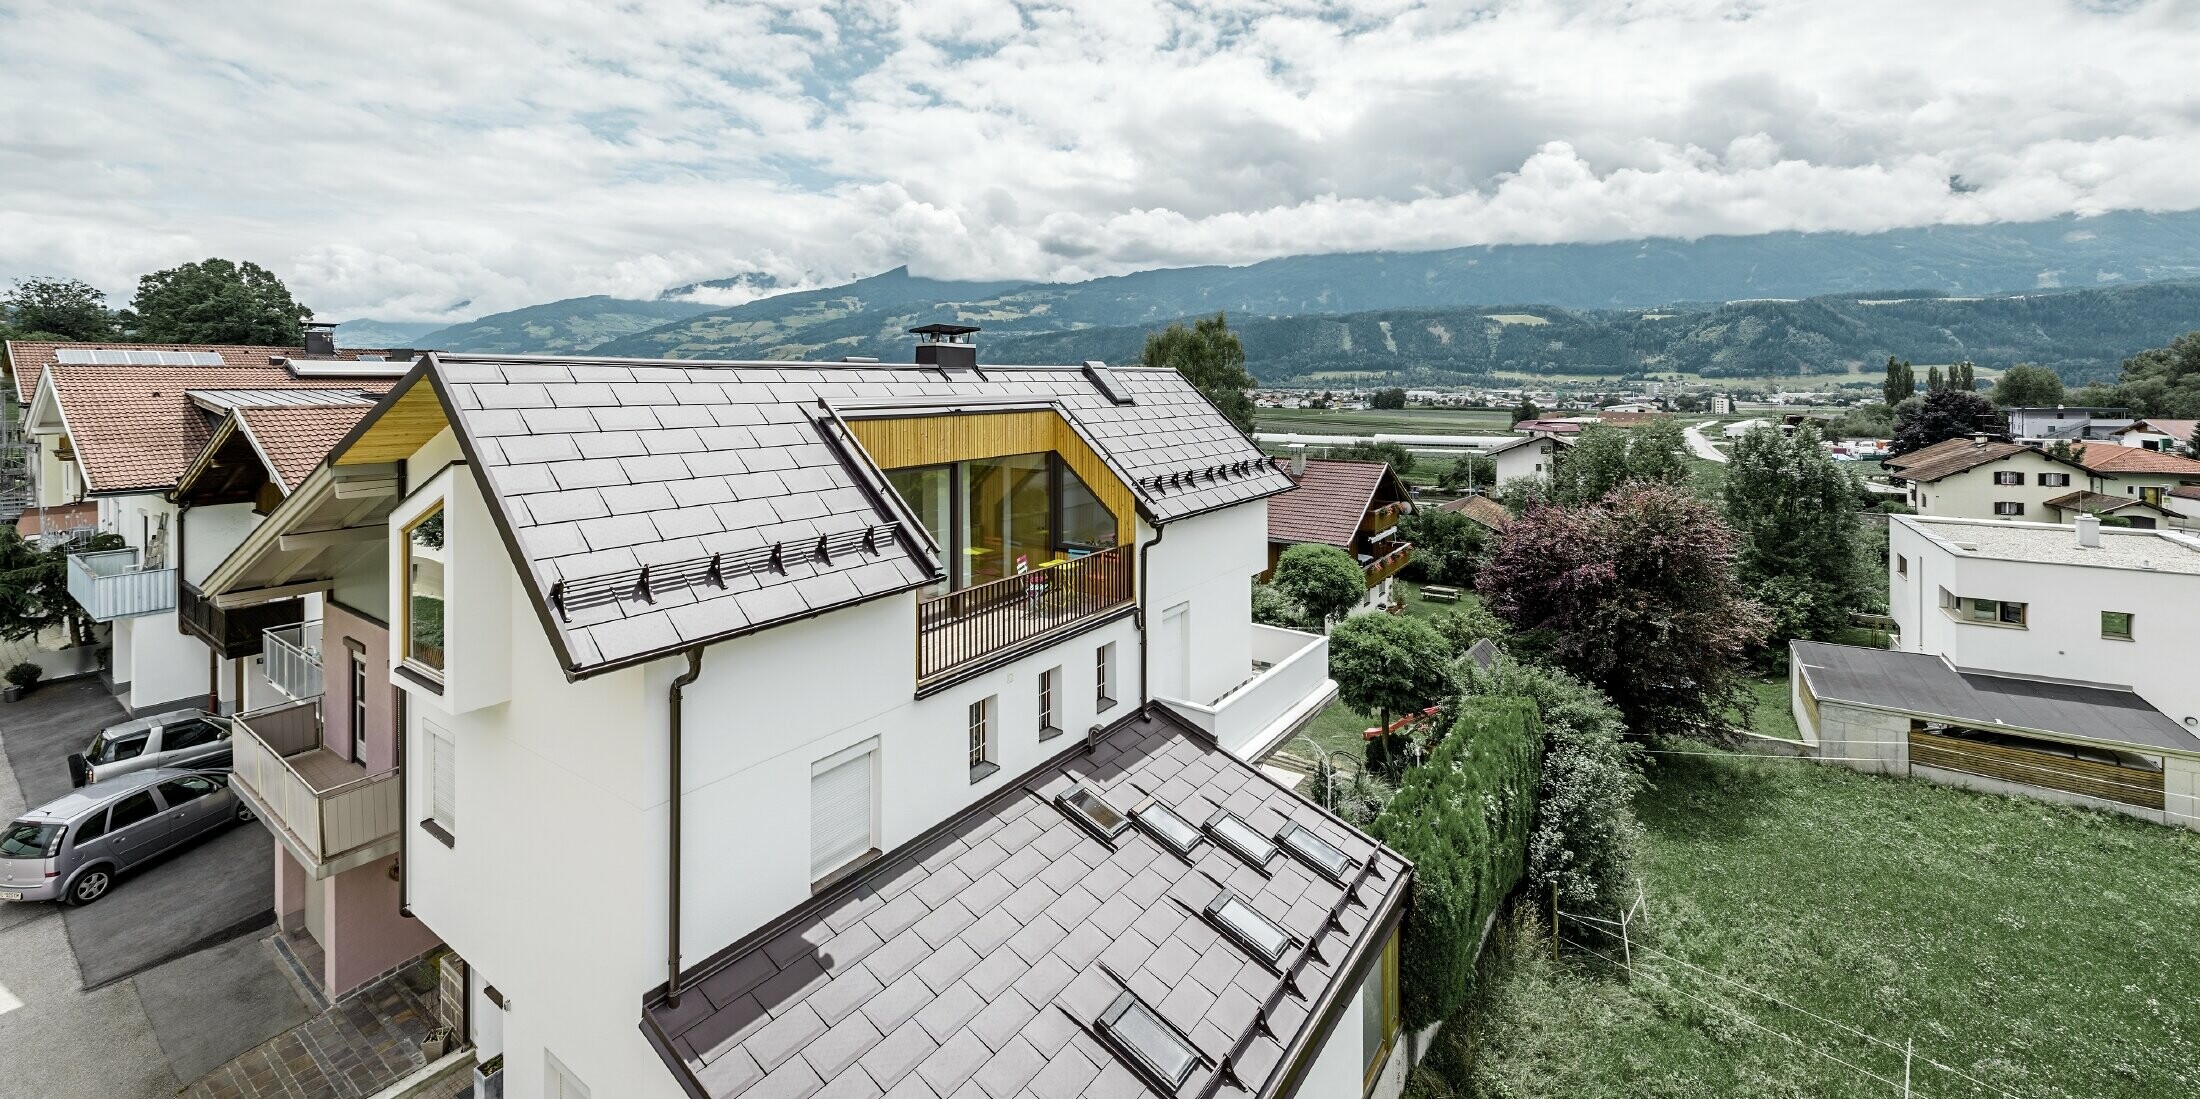 Das neue Wohnhaus in Thaur wurde mit der neuen Dachplatte R.16 von PREFA in Braun eingedeckt.